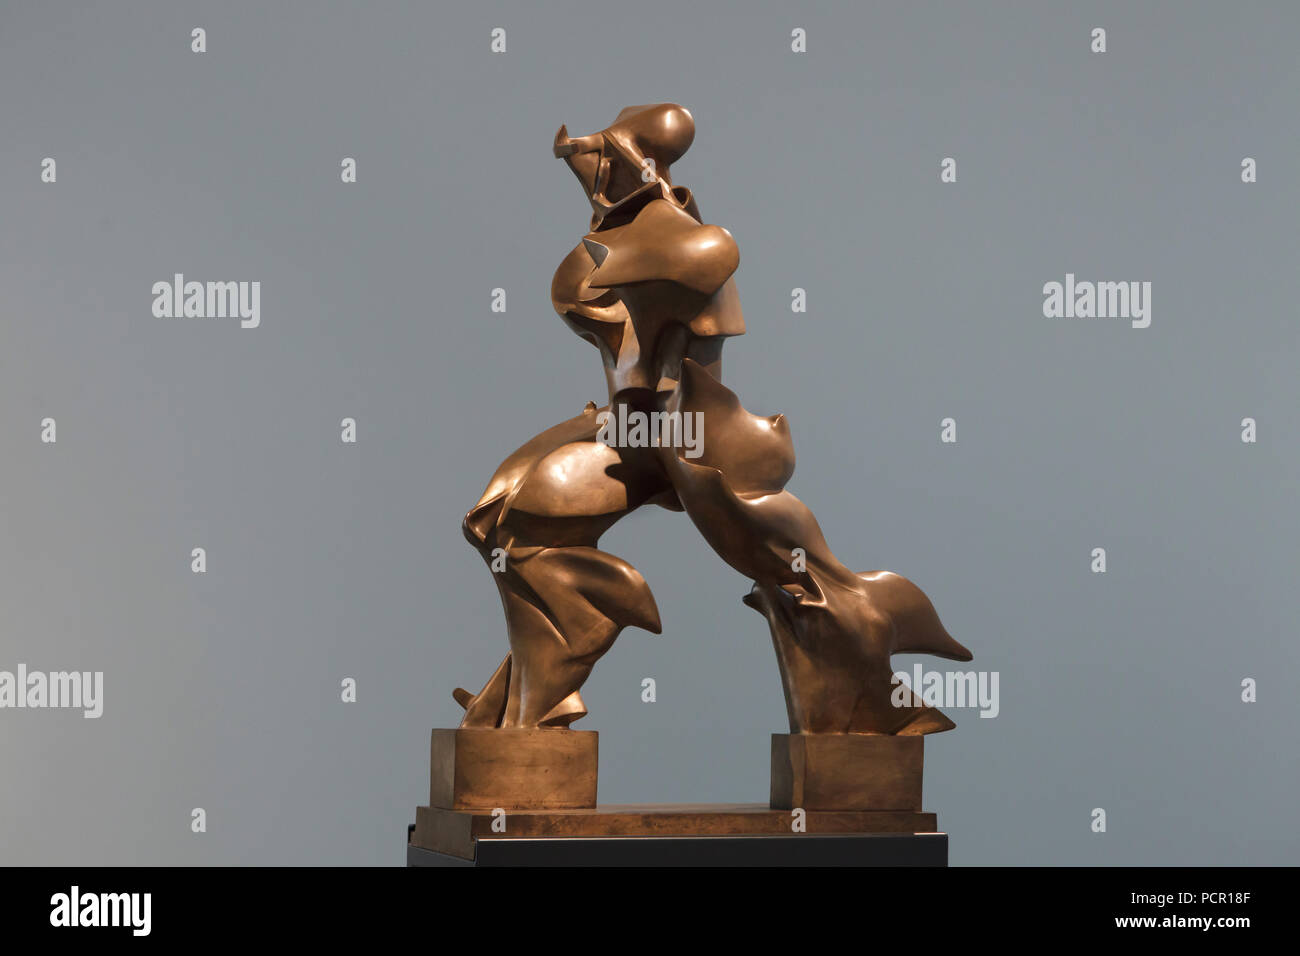 Estatua de bronce "Formas únicas de continuidad en el espacio" por el artista futurista italiano Umberto Boccioni (1913) que se muestra en la Kunsthalle de Mannheim en Mannheim, en el Estado federado de Baden-Württemberg, Alemania. Foto de stock